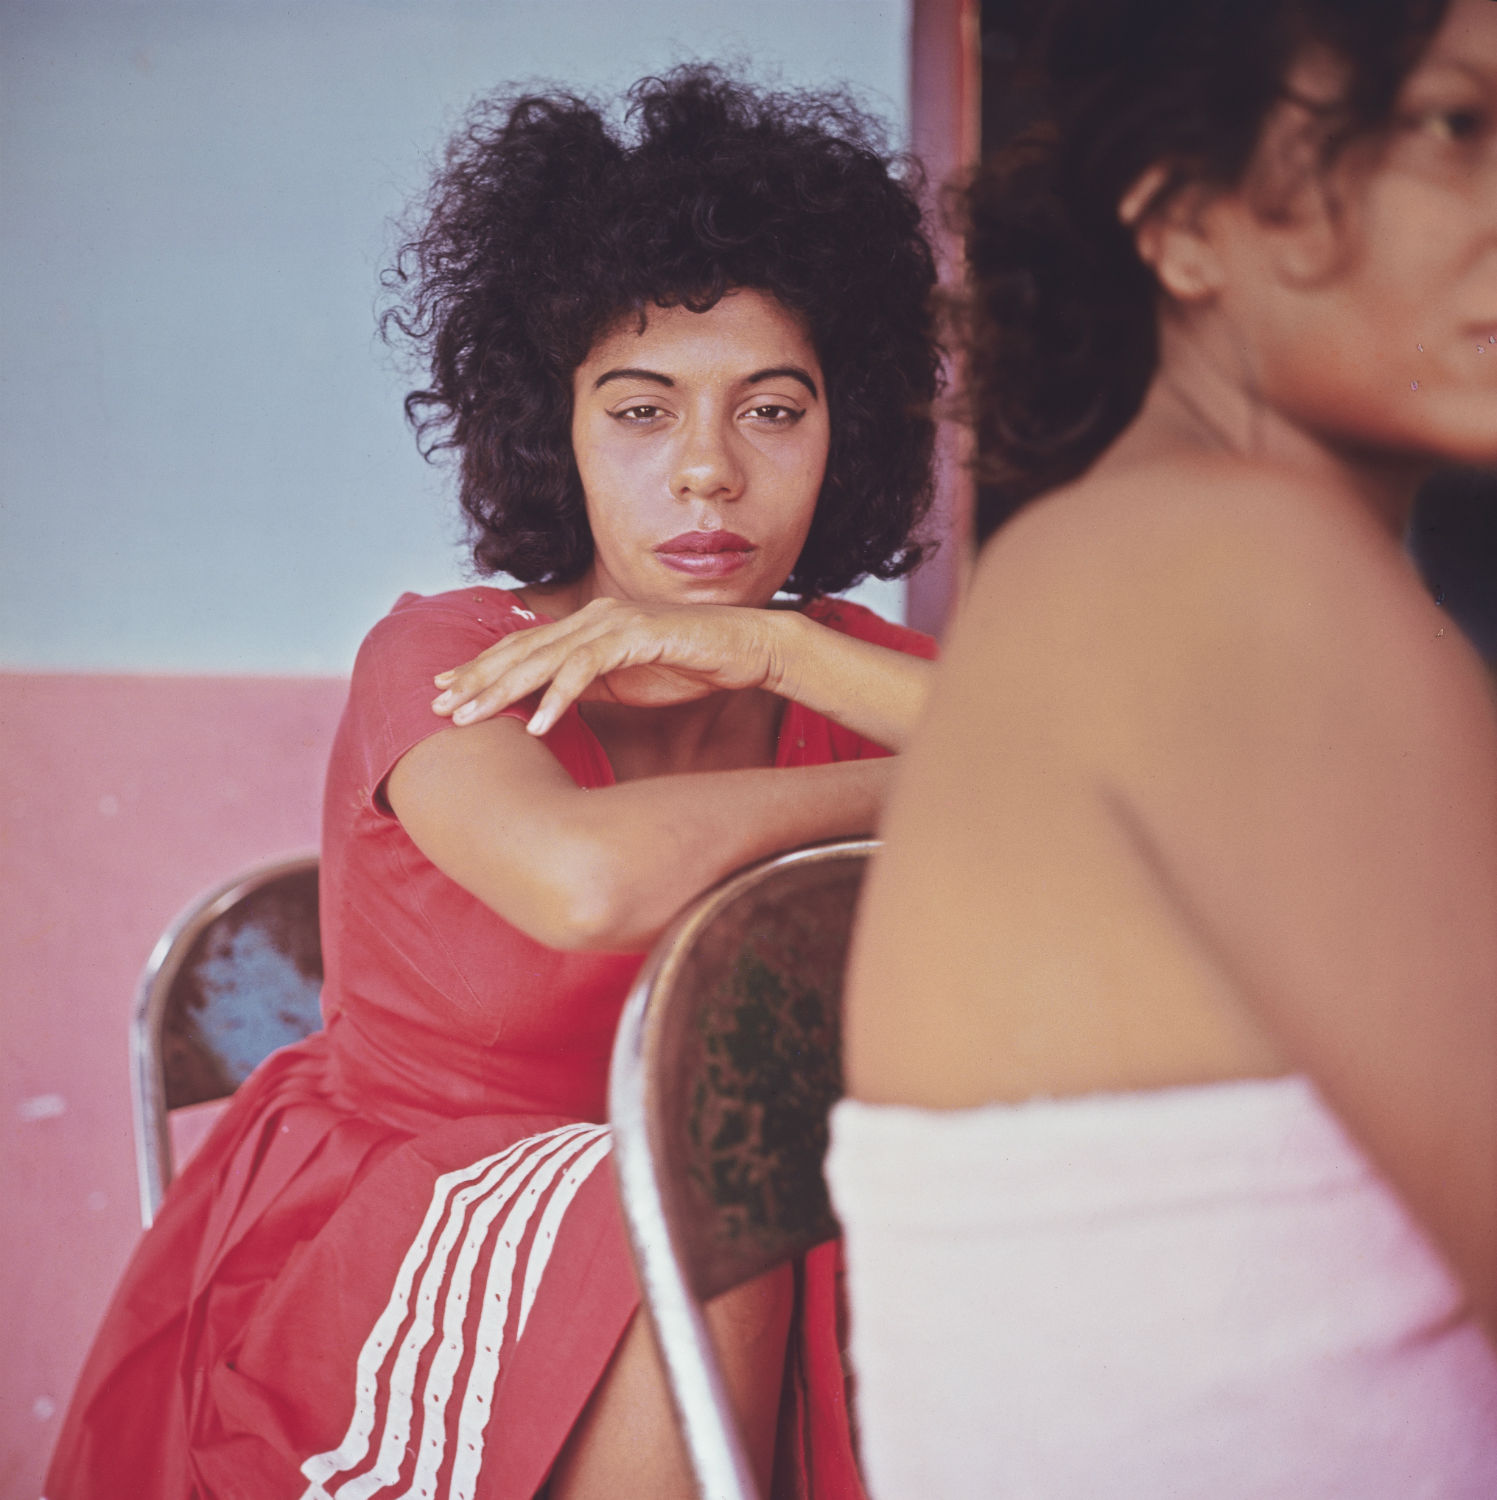 Tesca. Cartagena, Colombia. 1966.